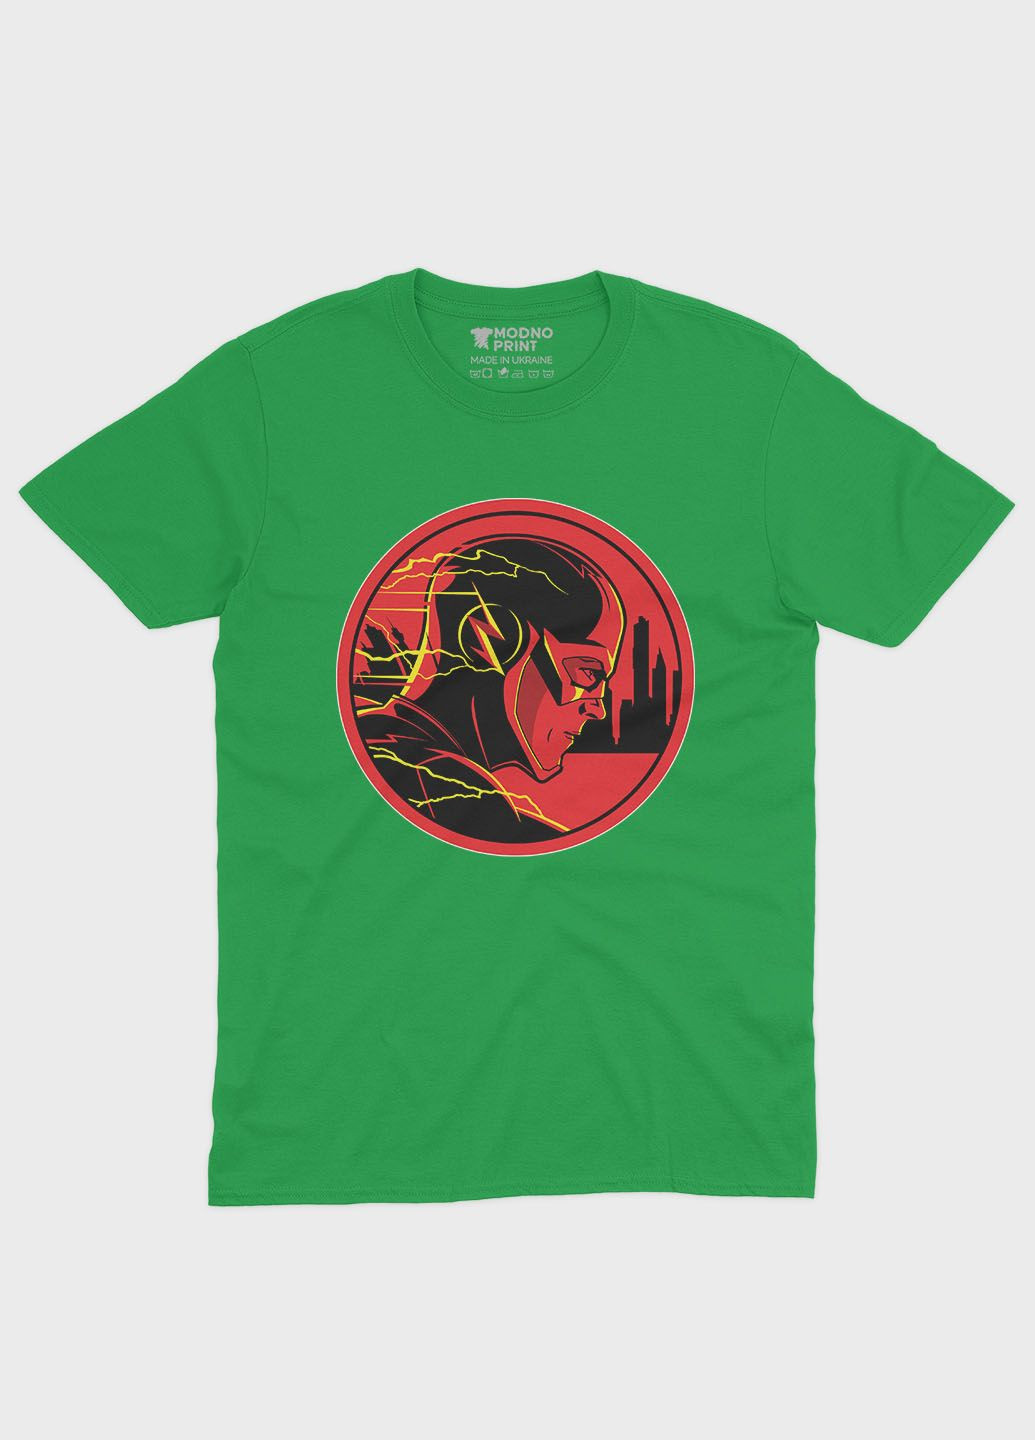 Зелена демісезонна футболка для хлопчика з принтом супергероя - флеш (ts001-1-keg-006-010-007-b) Modno